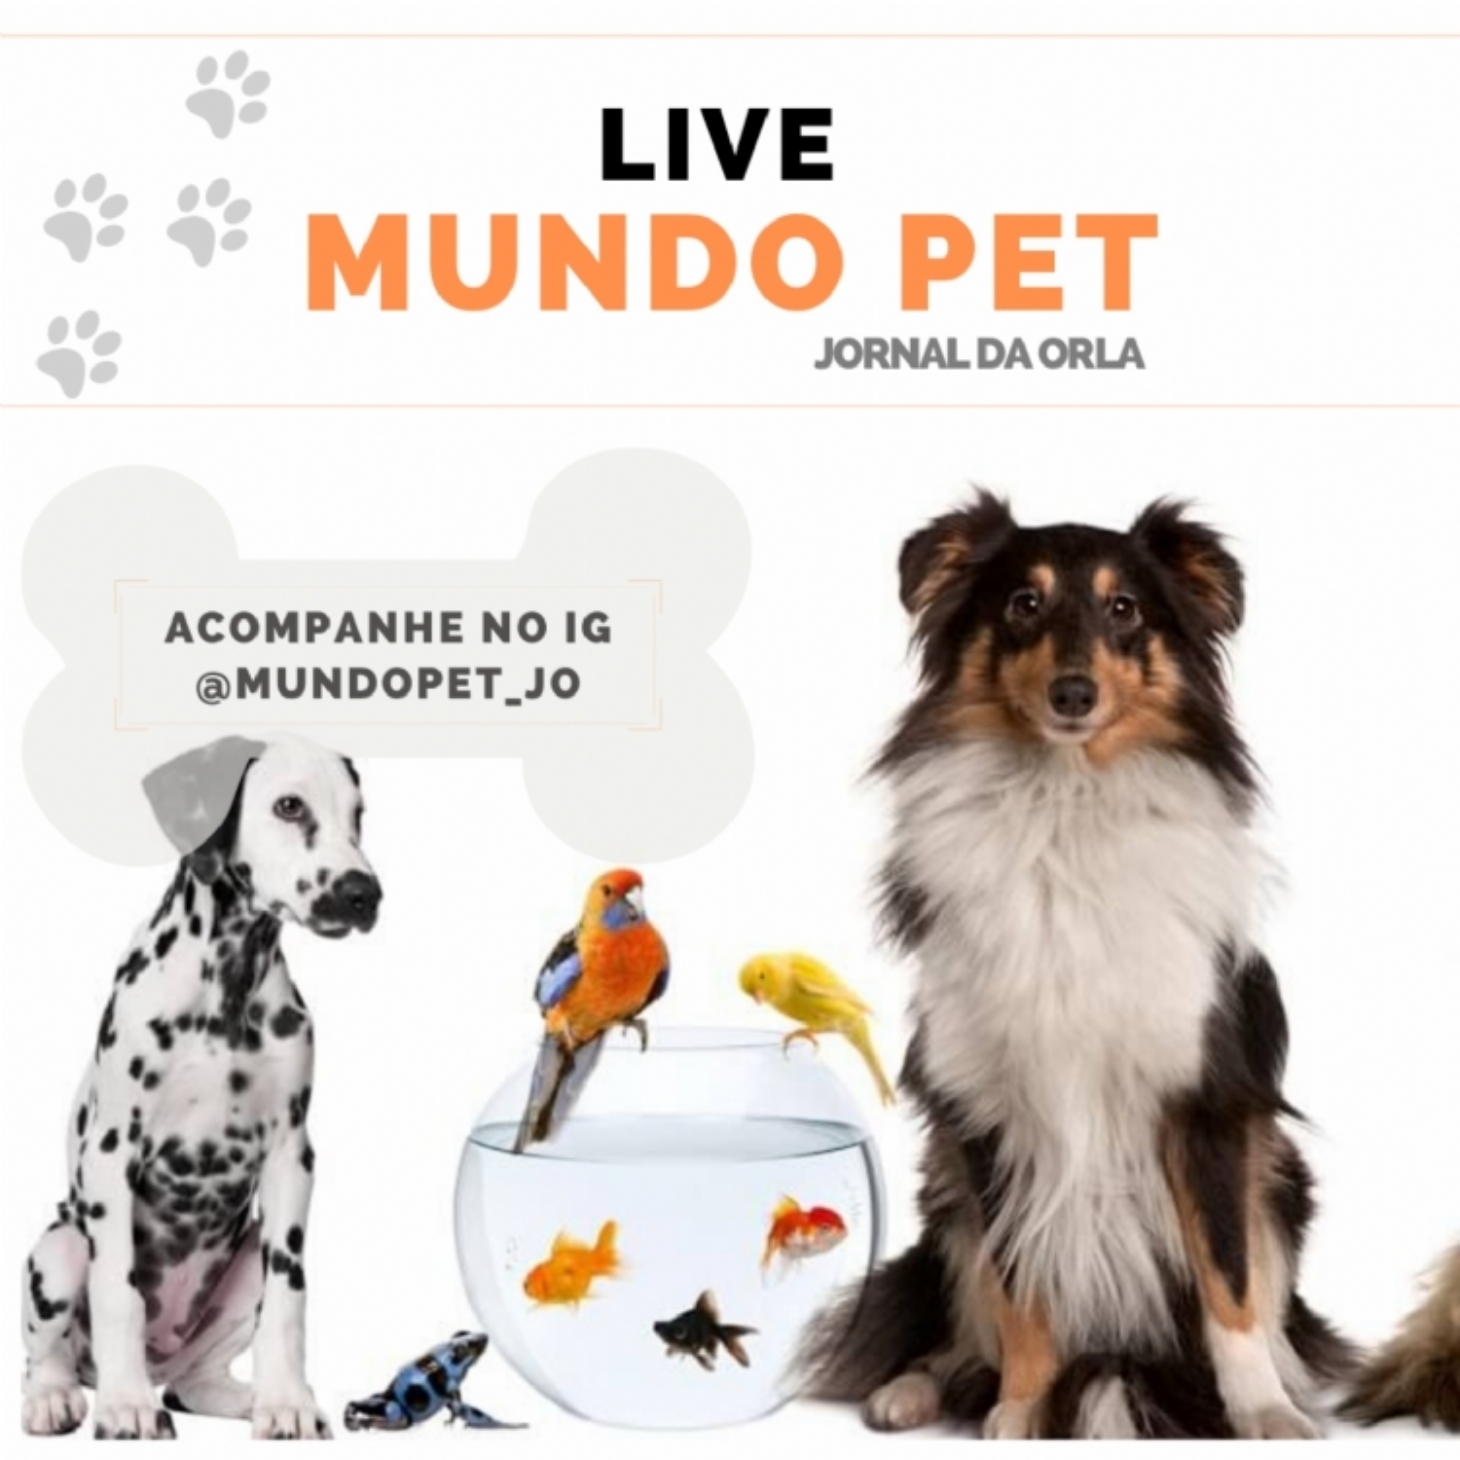 Mundo Pet JO: confira a agenda com as próximas lives | Jornal da Orla